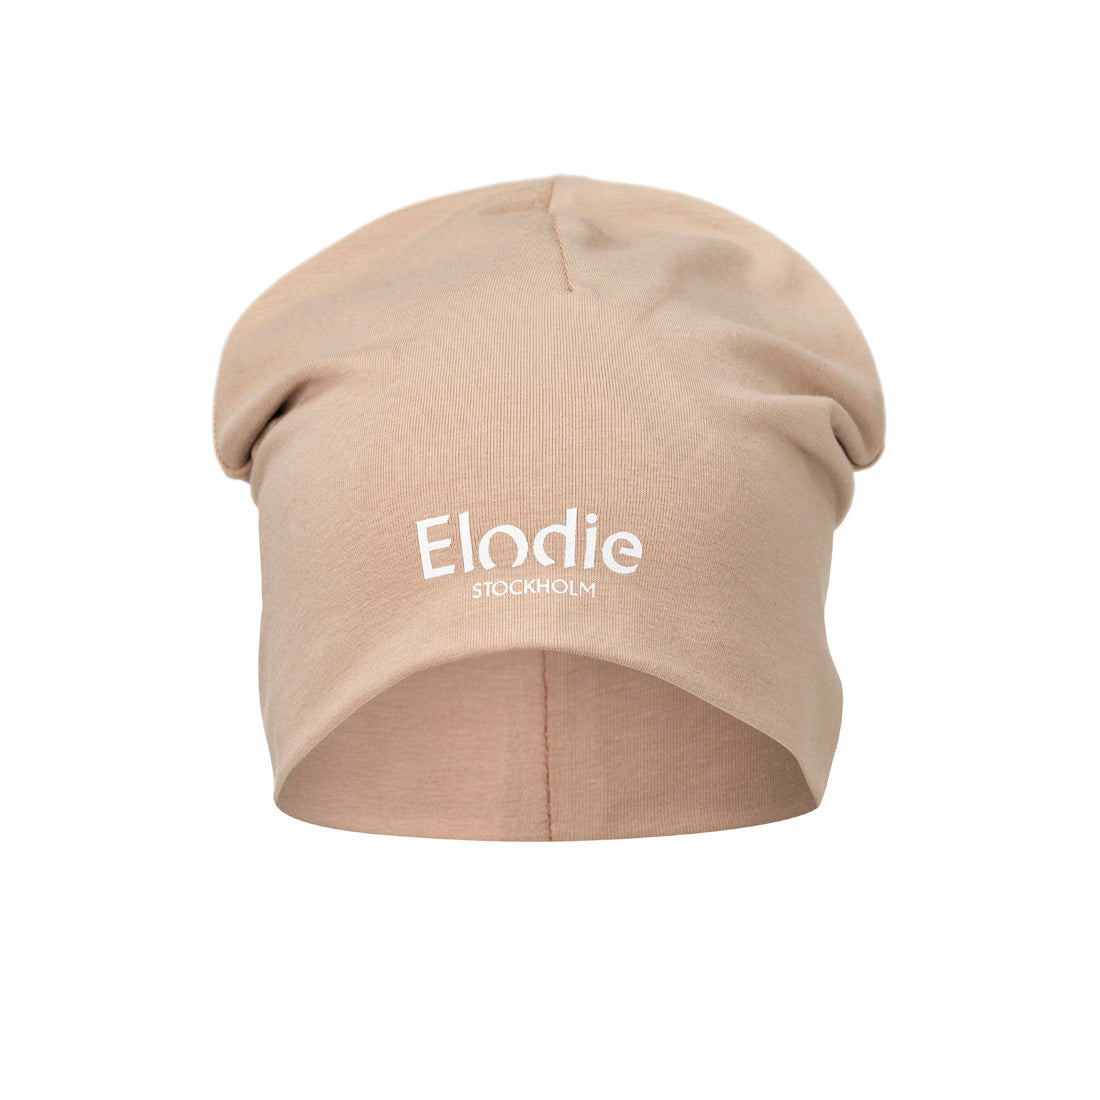 Czapeczka dla noworodka Elodie Details Blushing Pink, miękka bawełna Oeko-Tex, idealna na wiosnę, 6-12 miesięcy.